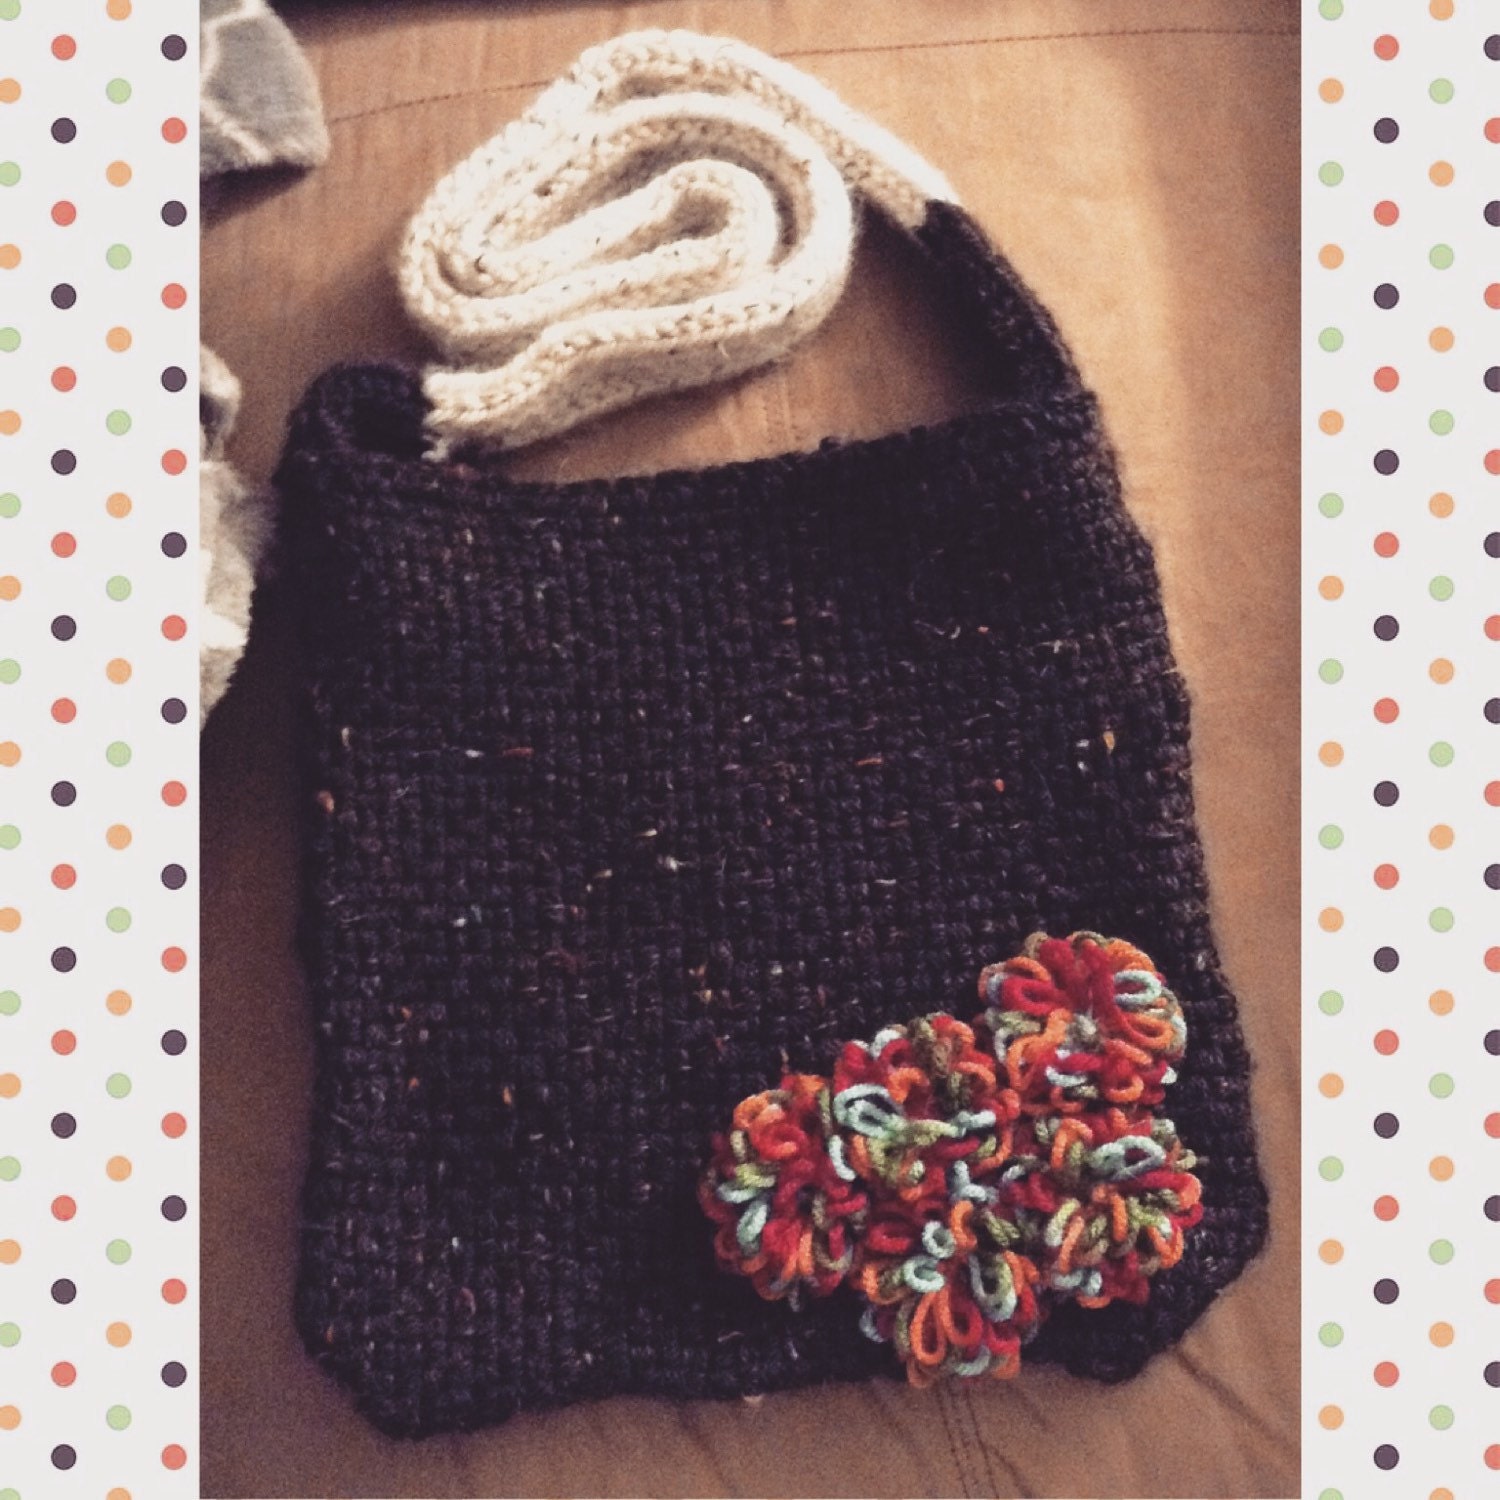 Knit Crossbody Bag by KrazyBoutKnitting on Etsy